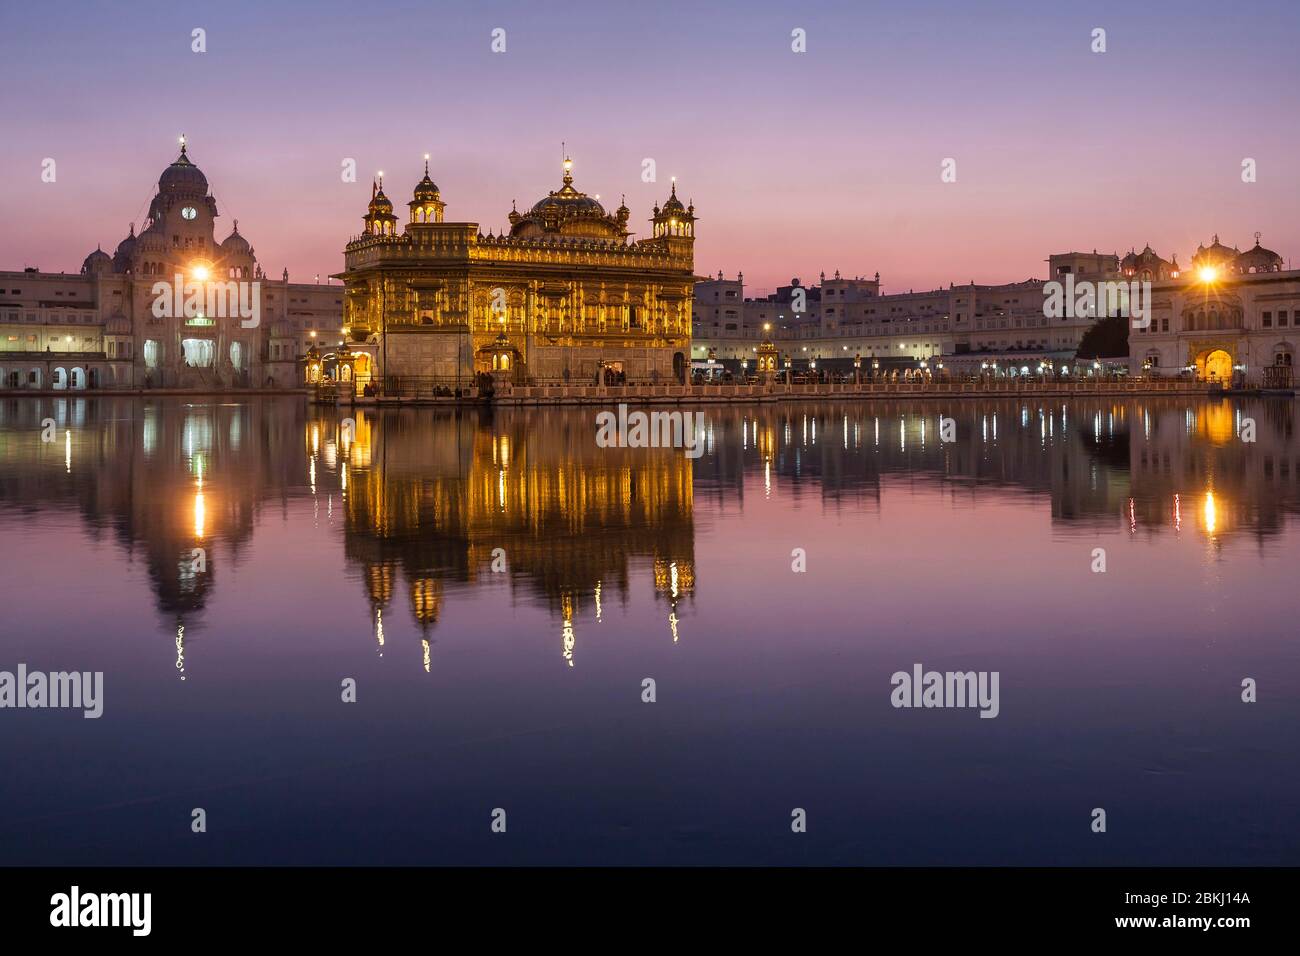 India, Punjab State, Amritsar, Harmandir Sahib, Golden Temple iluminated at dusk, with reflection in the Nectar Basin, Amrit Sarovar, holy place of Sikhism Stock Photo